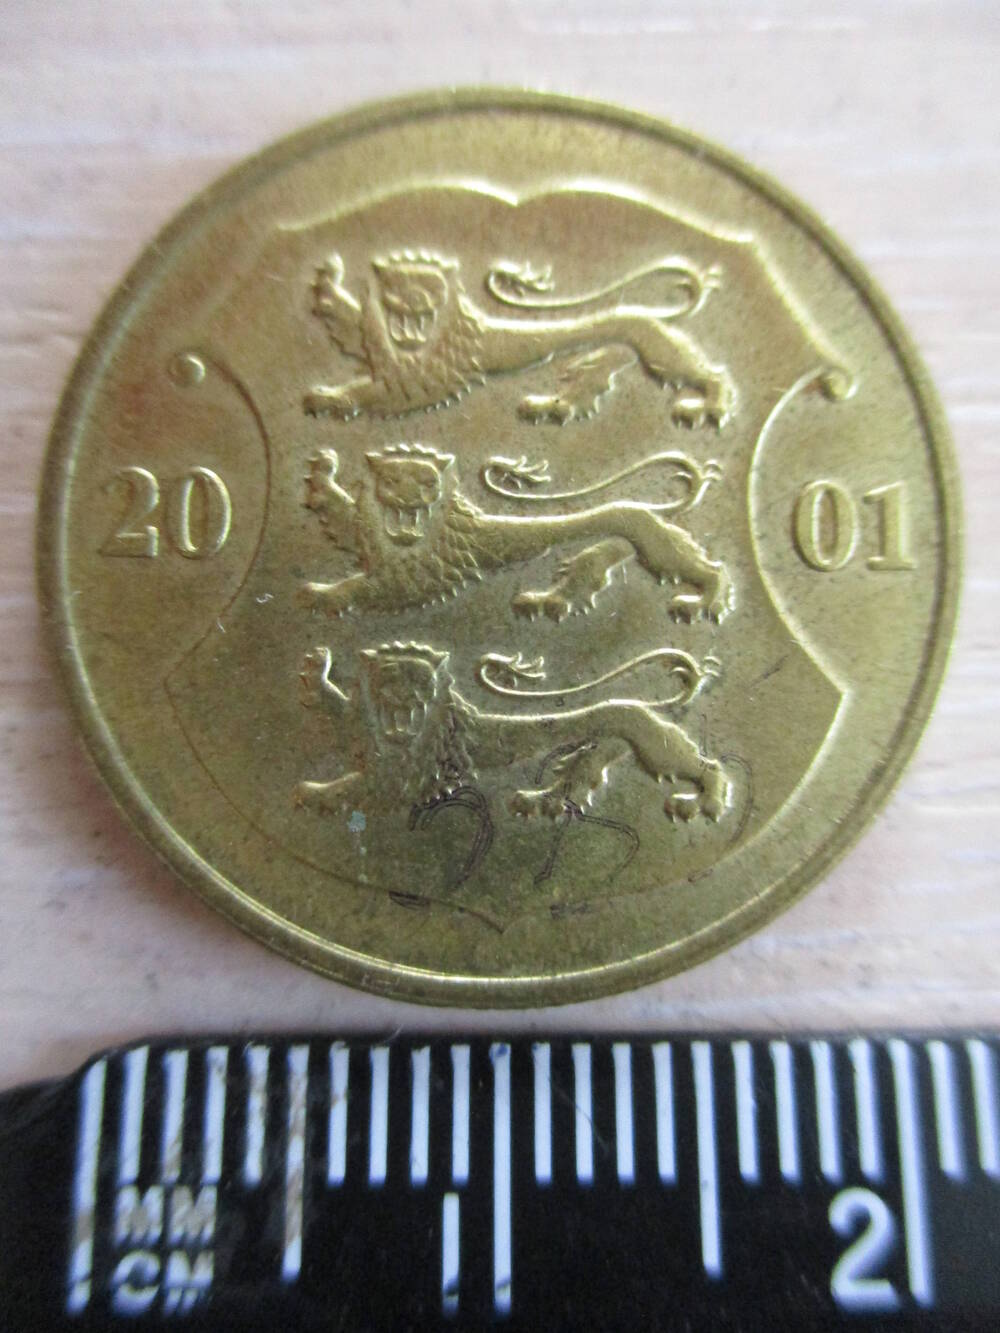 Монета Эстонии достоинством 1 крона 2001 года.